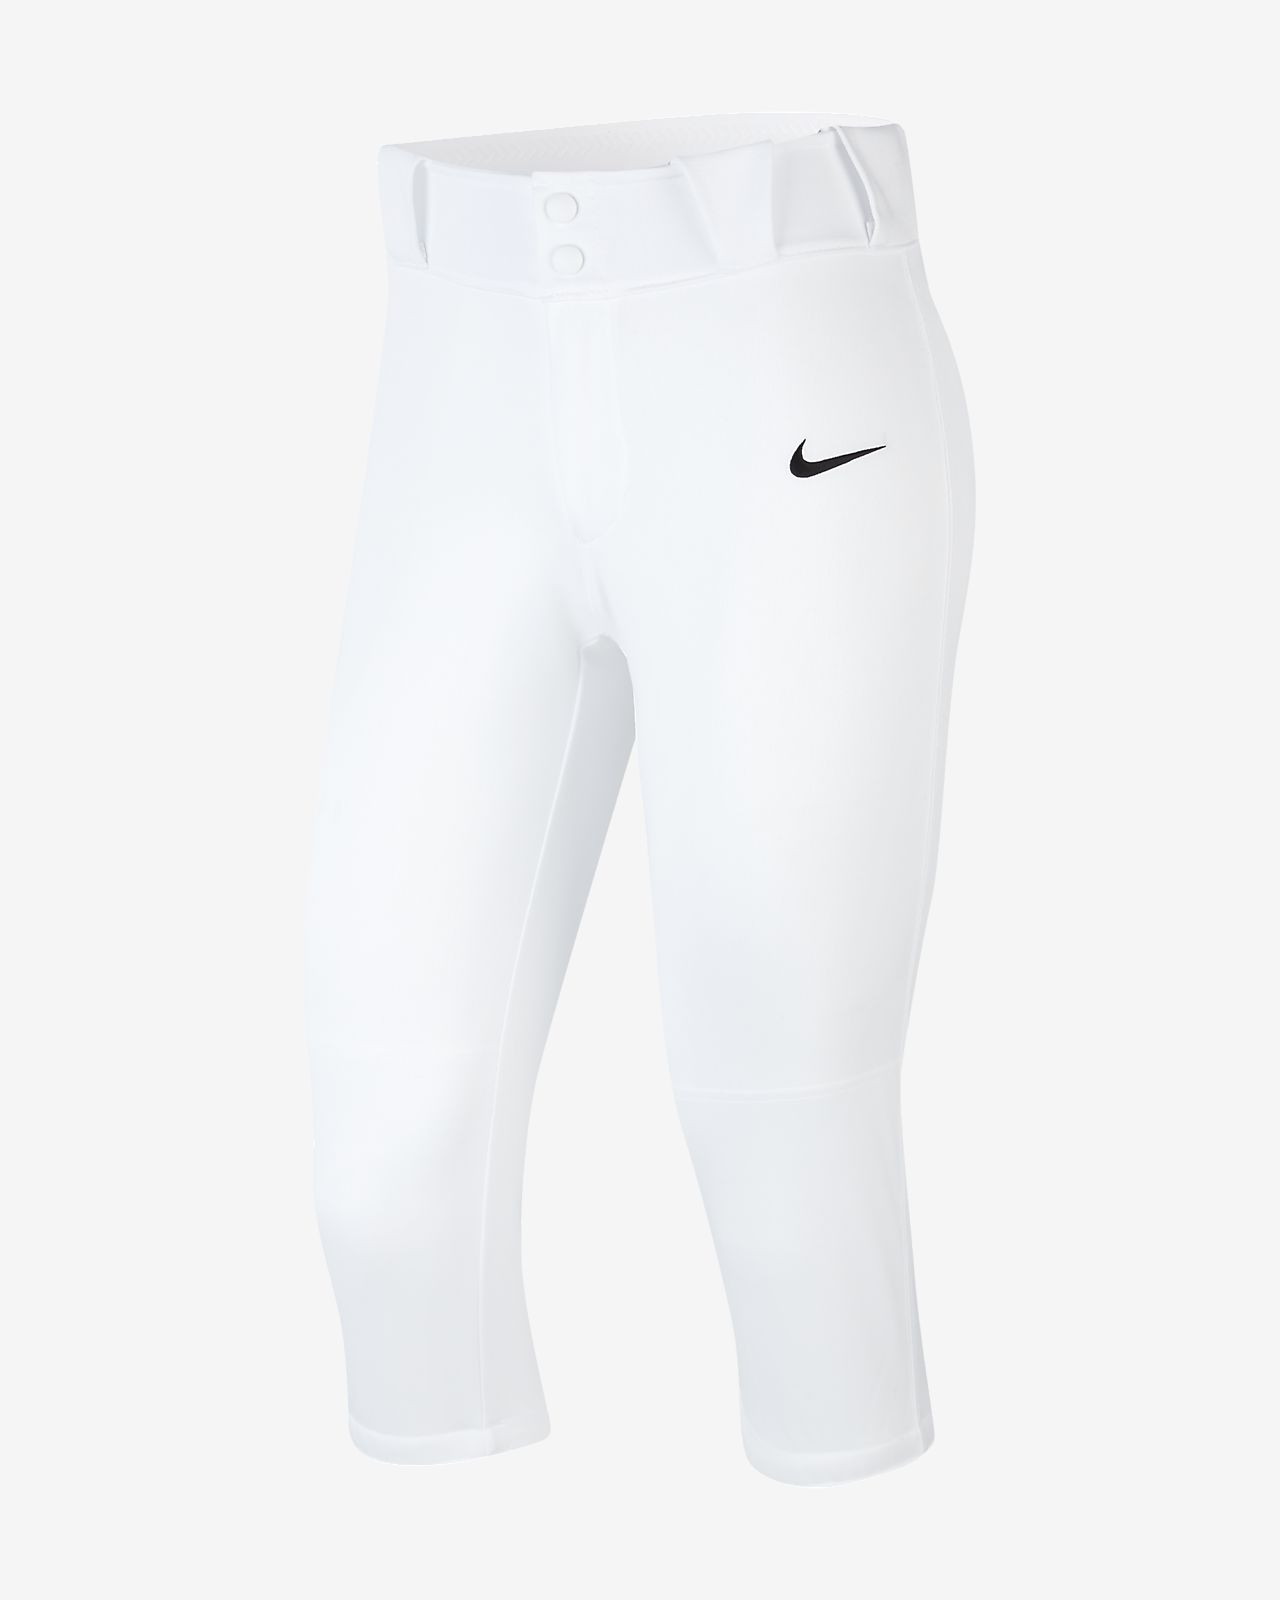 Nike Womens Softball Pants Size Chart